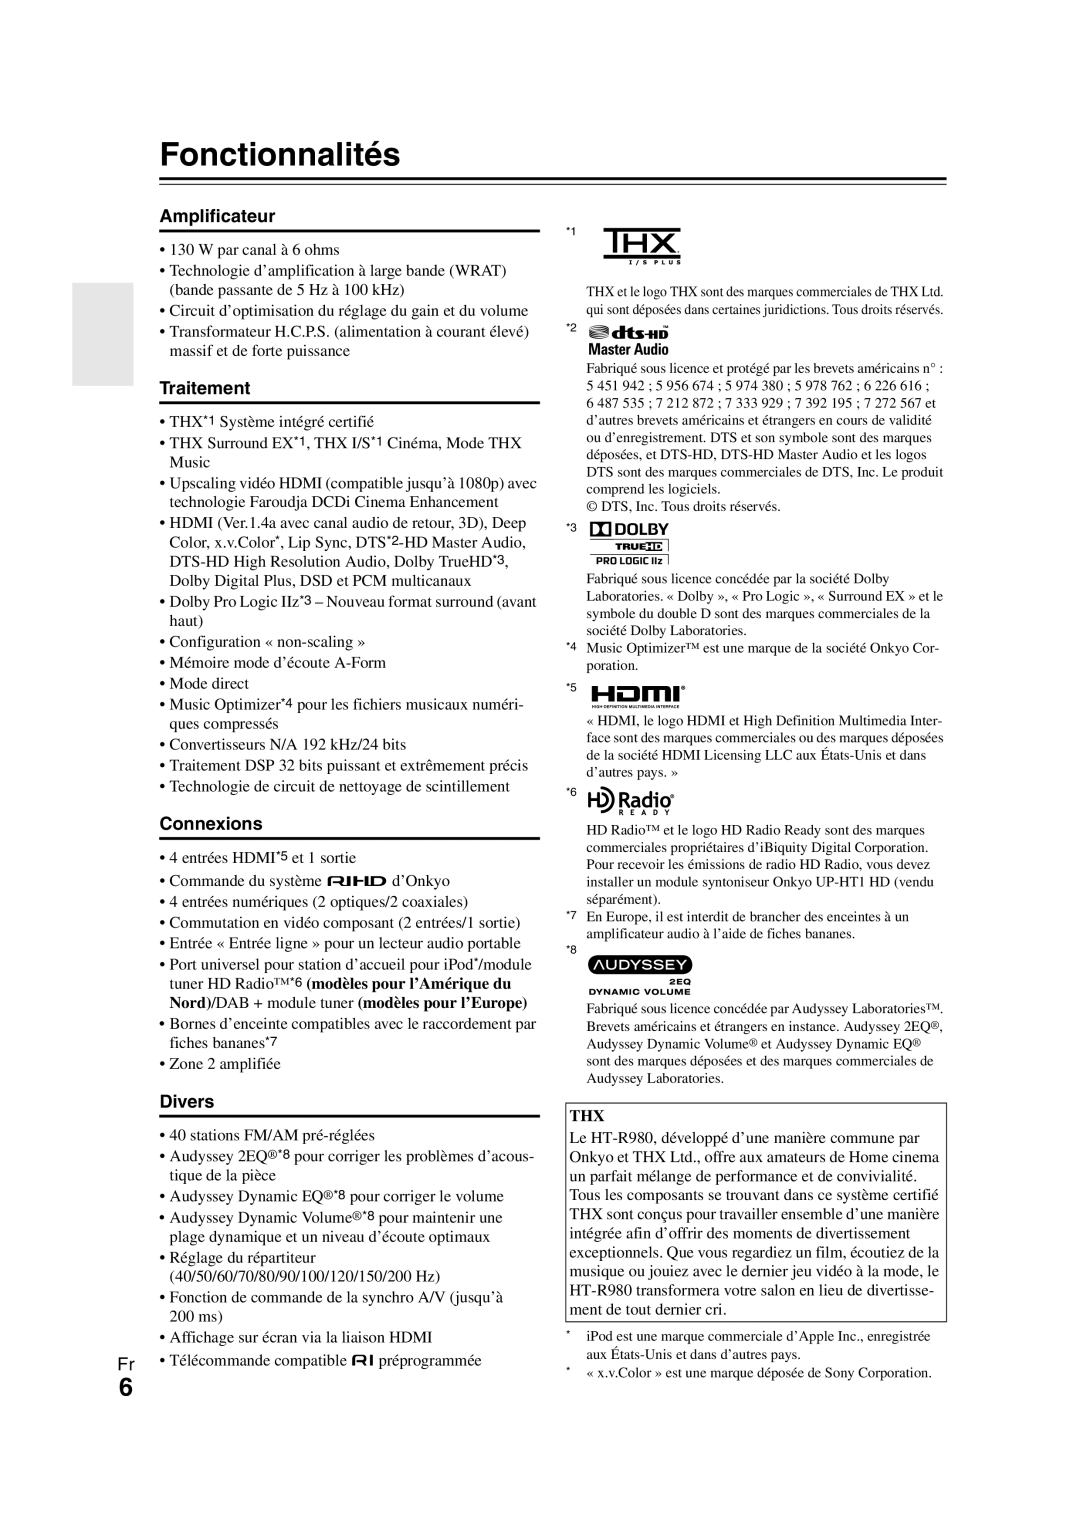 Onkyo HT-R980 instruction manual Fonctionnalités, Amplificateur, Traitement, Connexions, Divers 